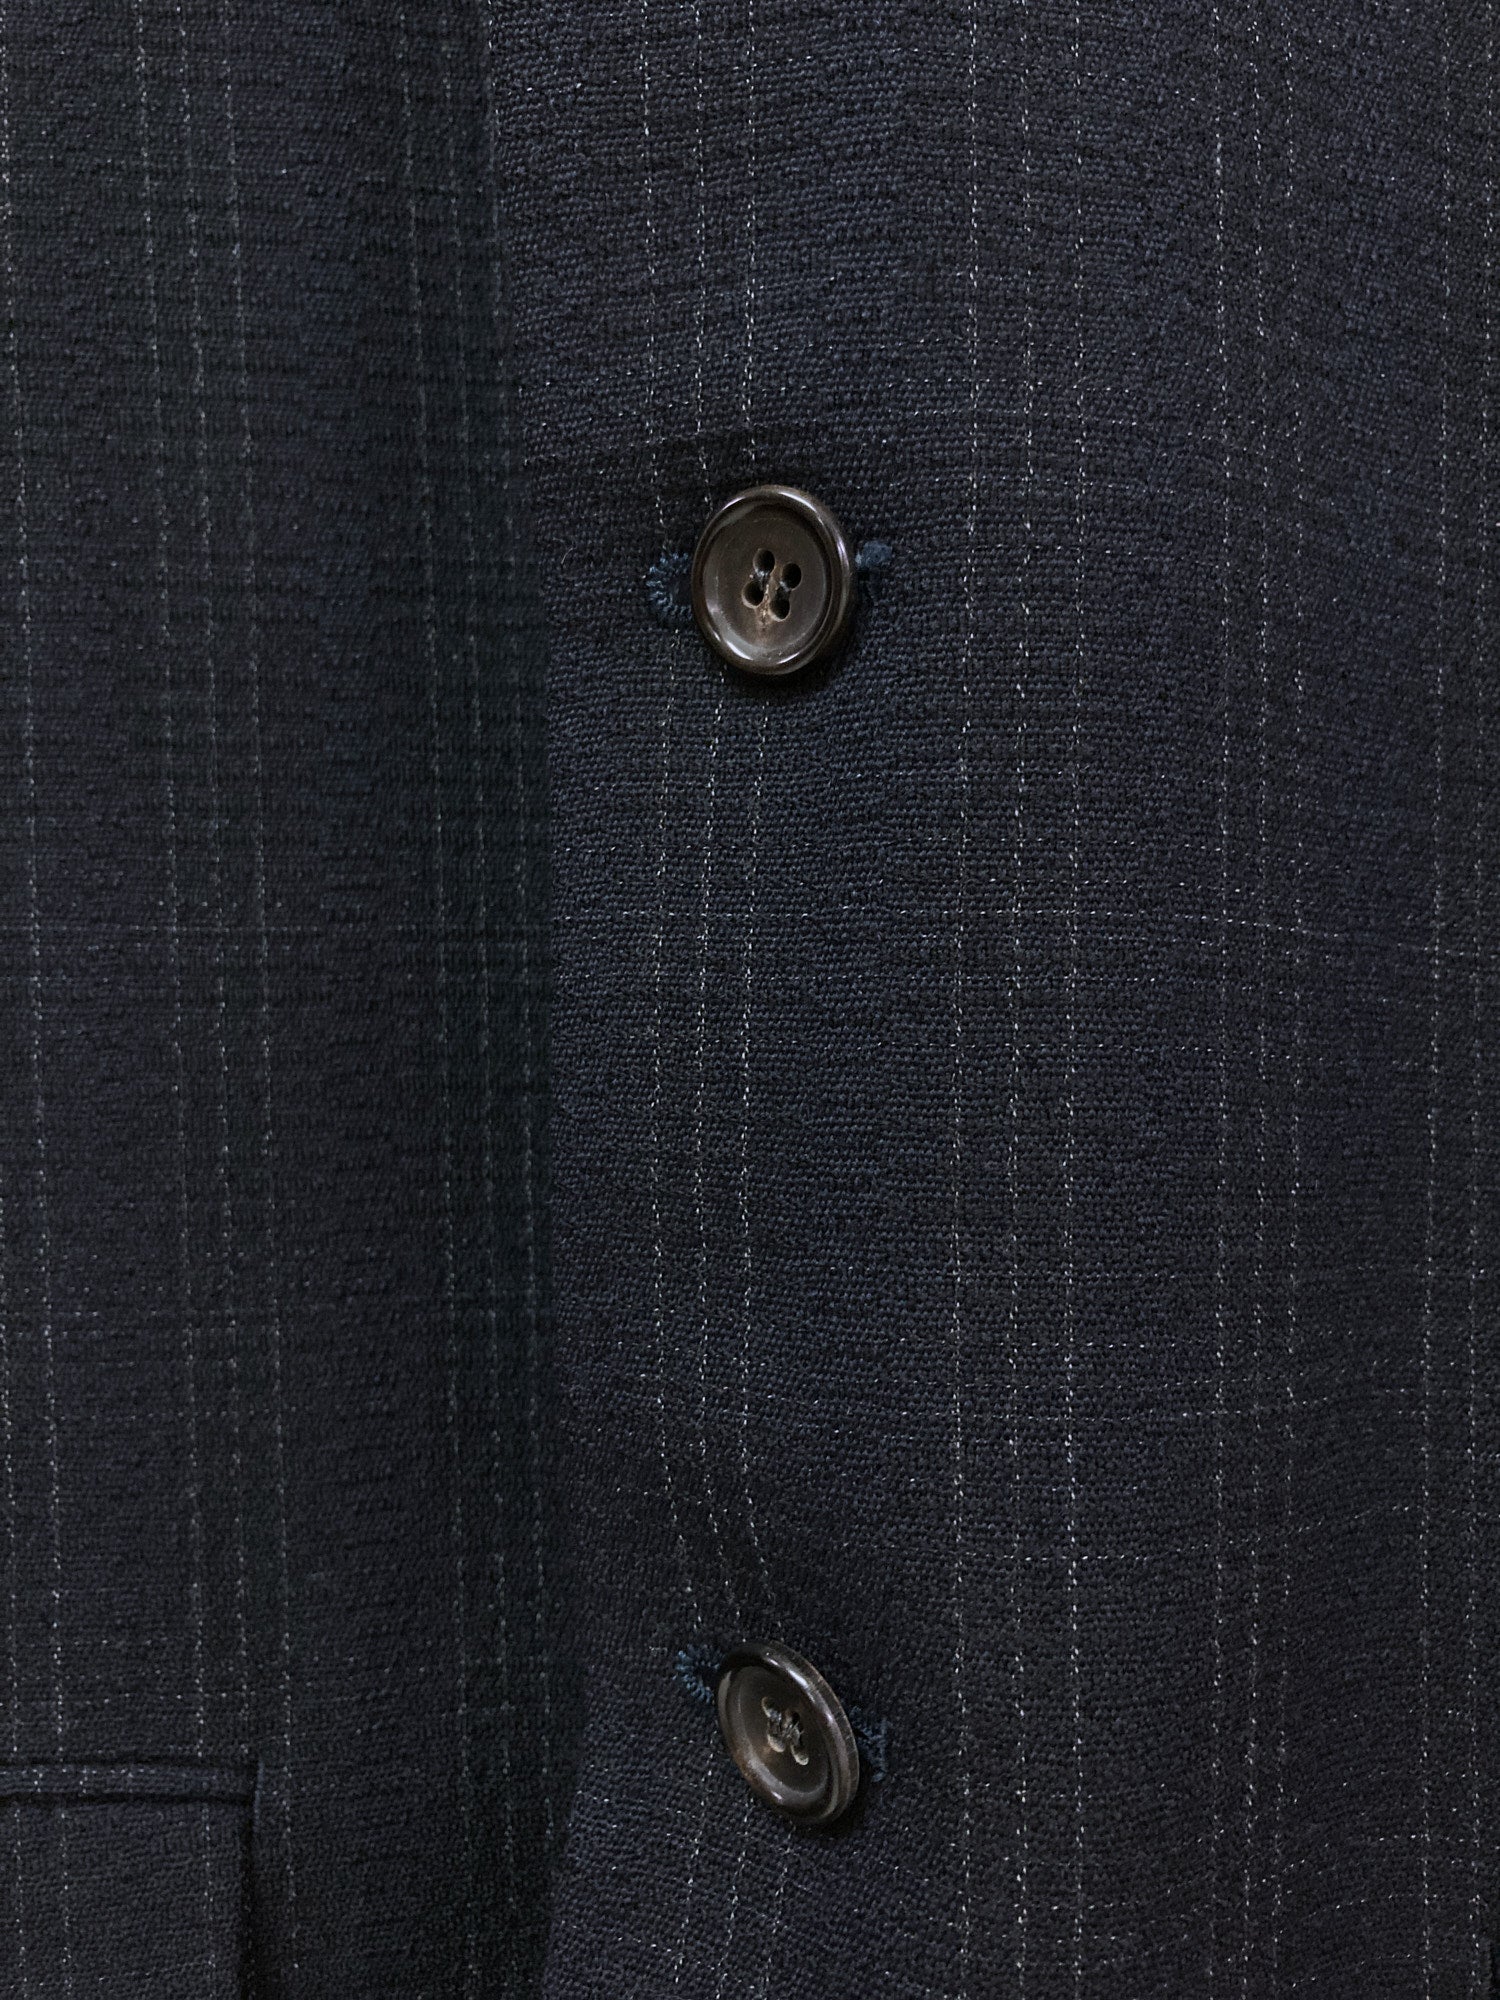 Comme des Garcons Homme 1988 dark navy wool check three button blazer - S M